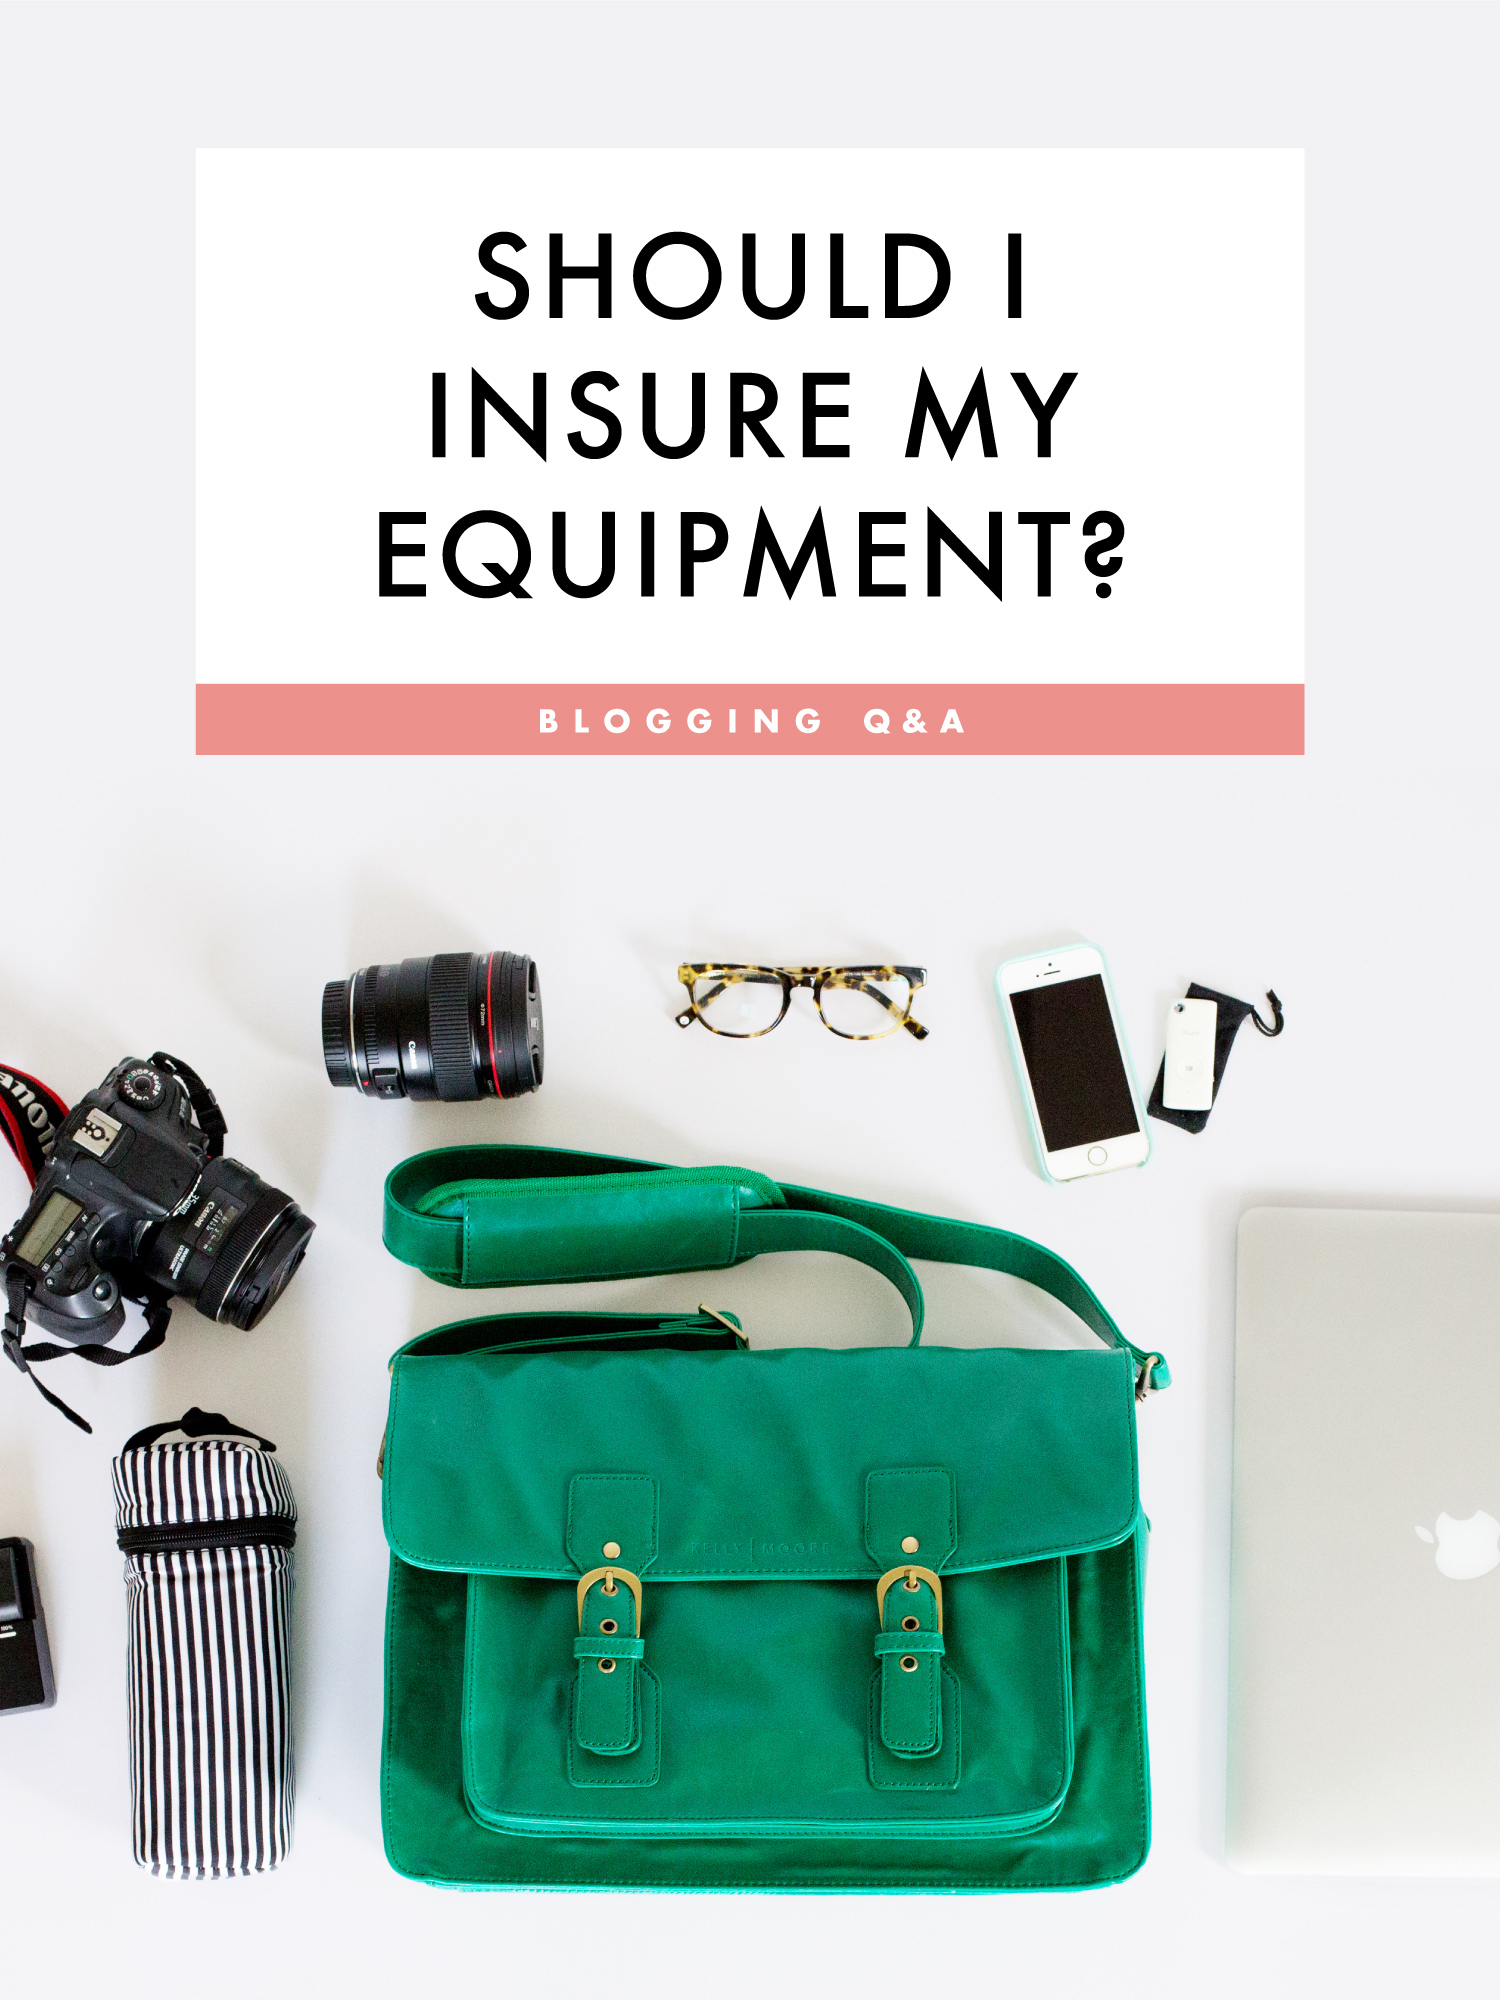 Should I insure my equipment